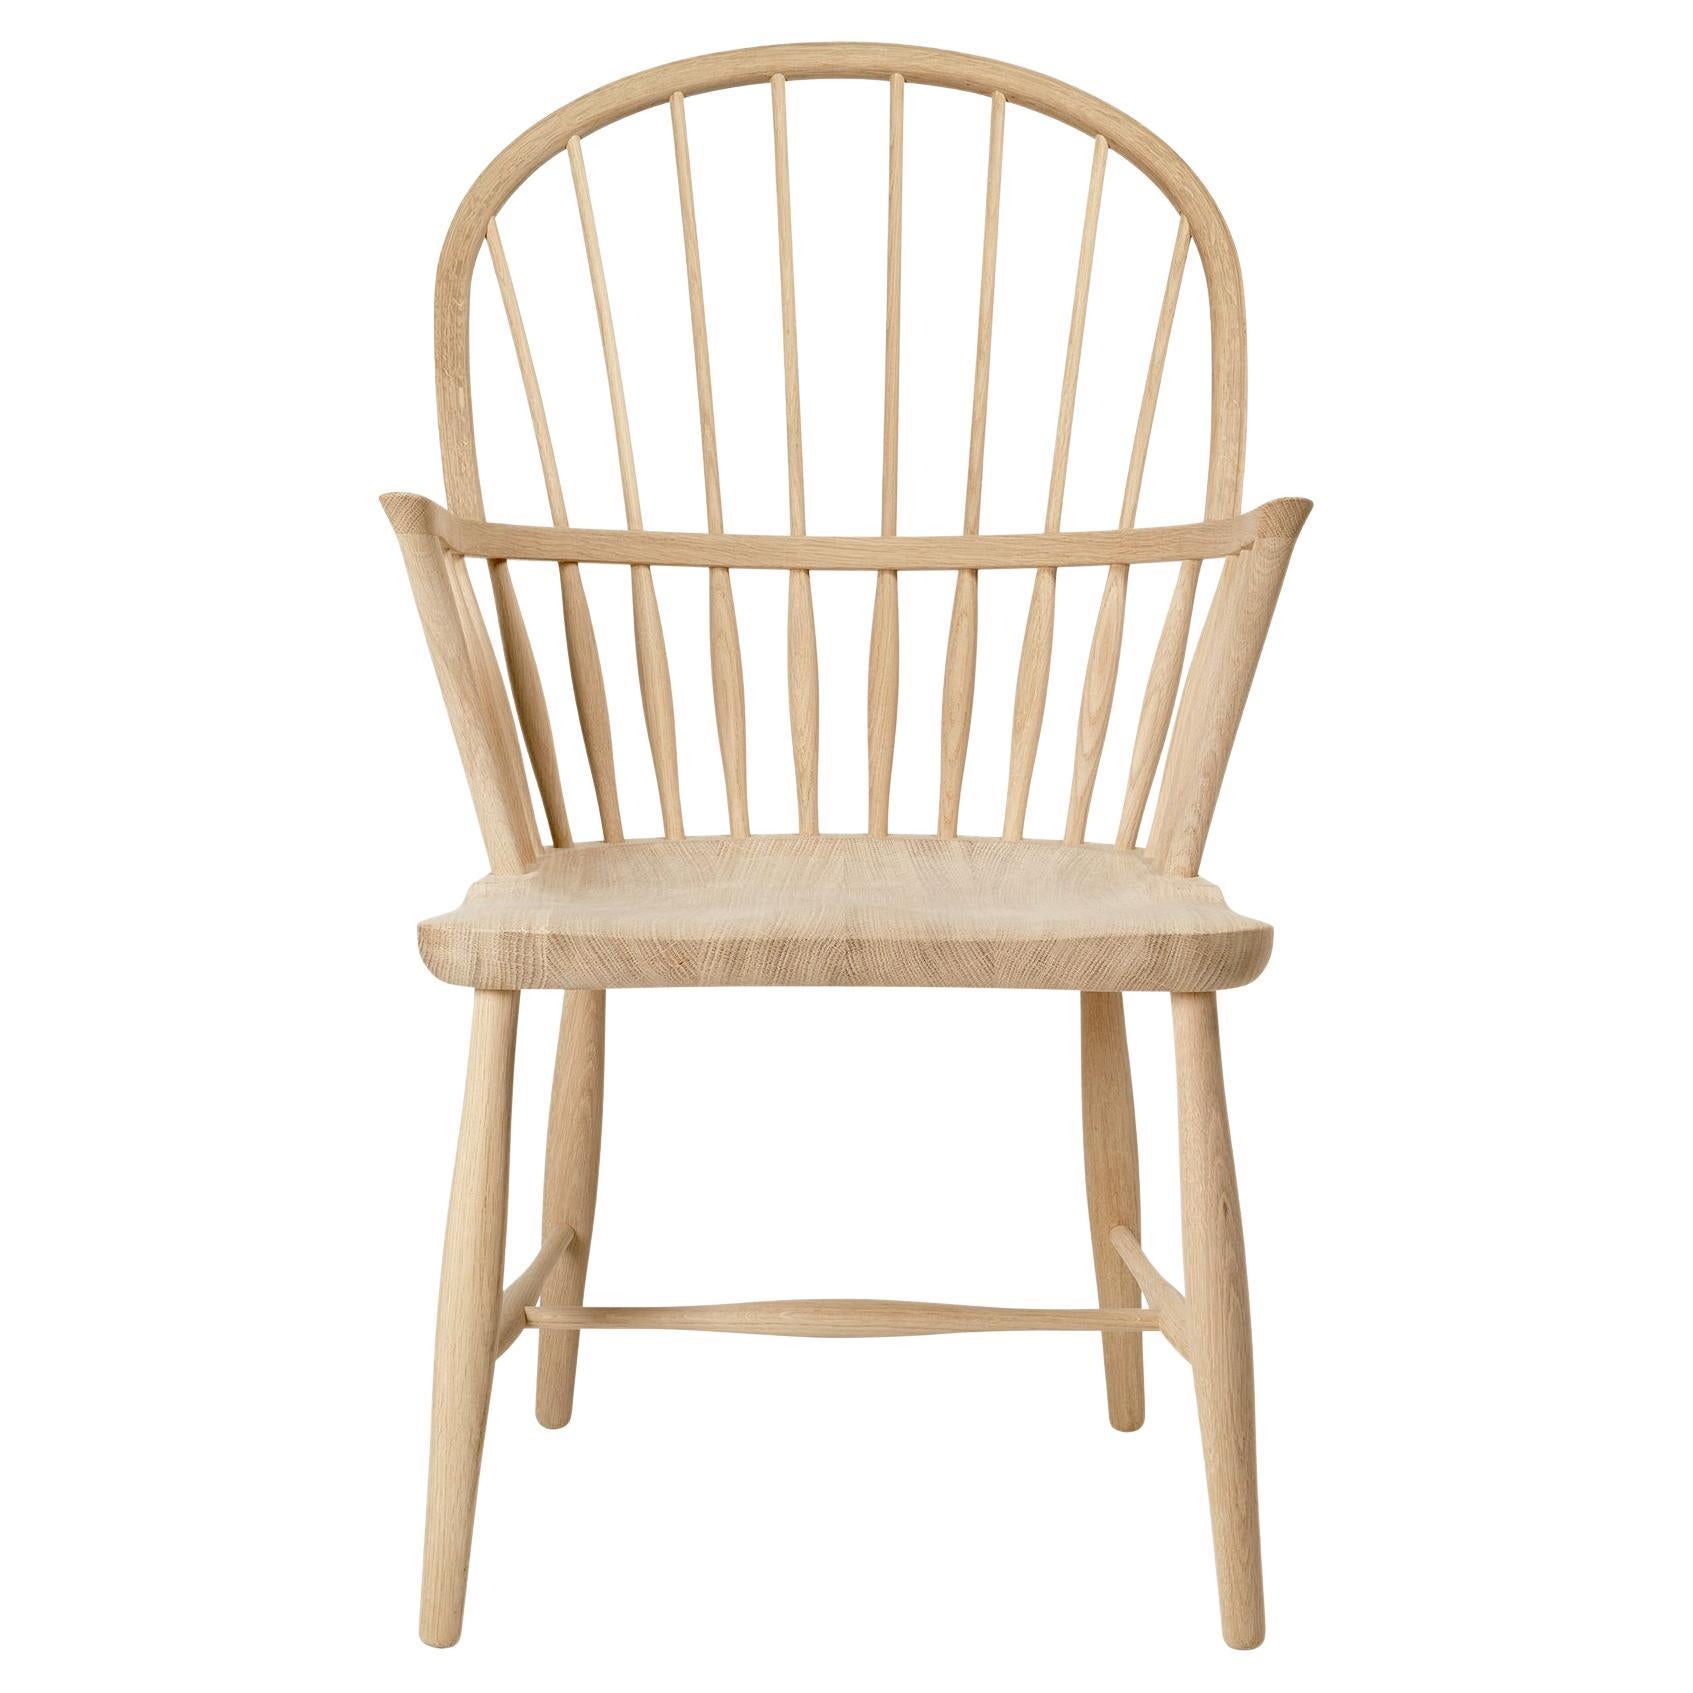 Frits Henningsen 'FH38 Windsor' Chair in Soaped Oak for Carl Hansen & Son